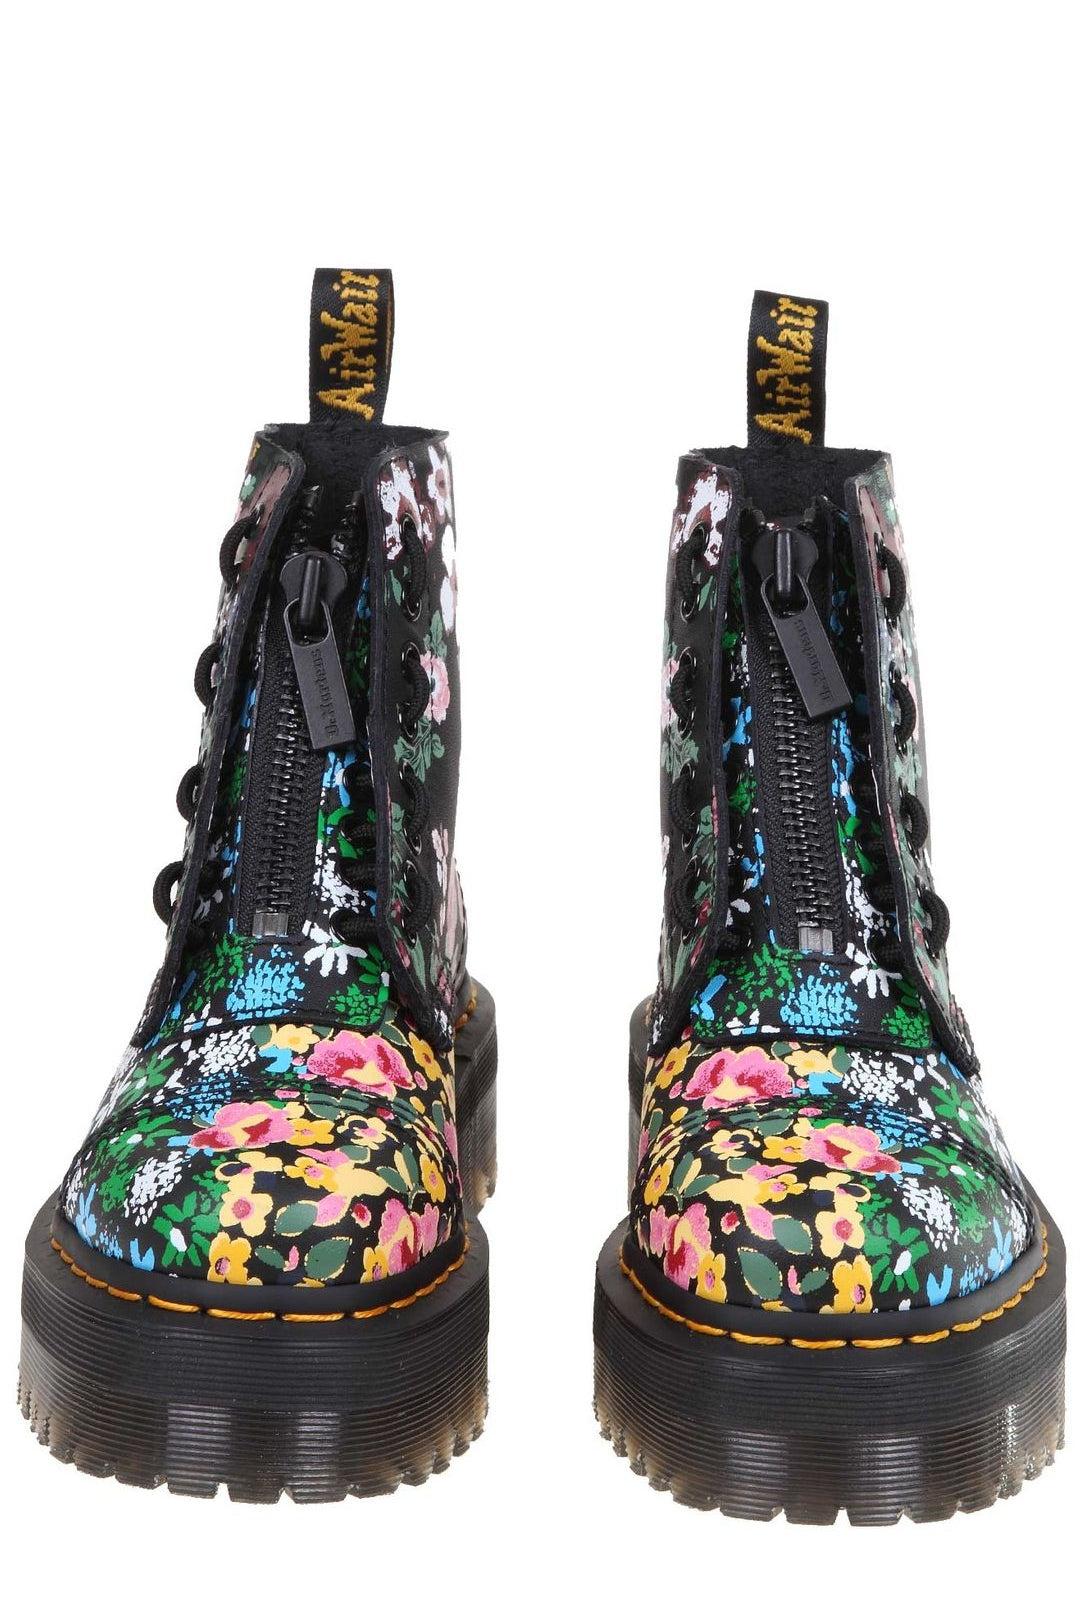 Dr. Martens Women's Sinclair Boots, Floral Mash Up, 5